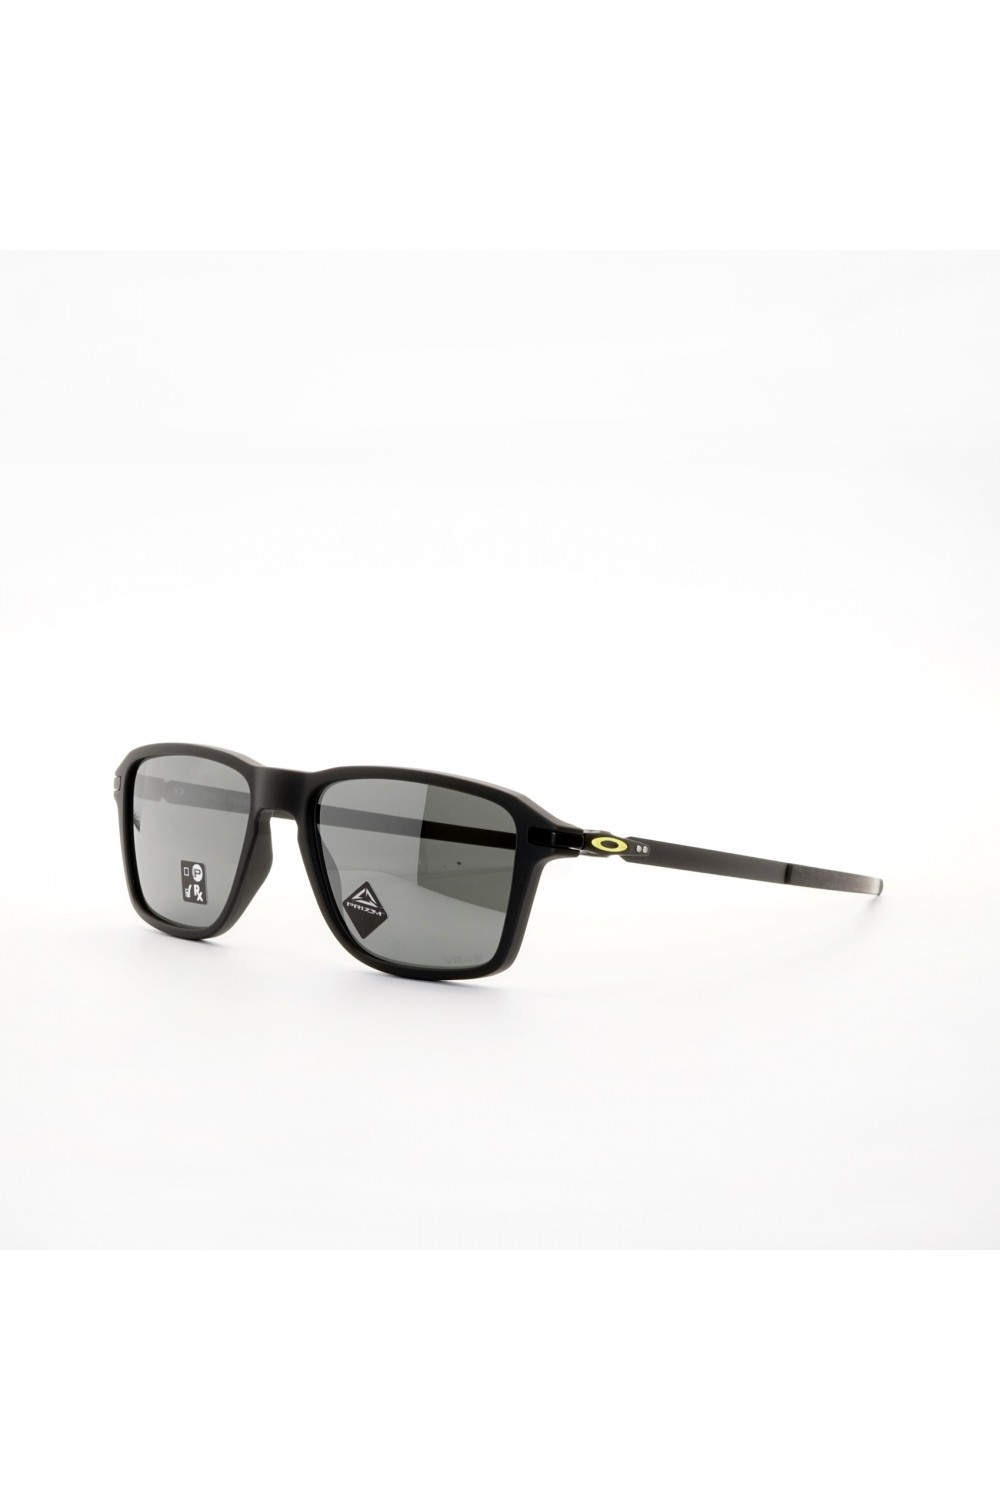 Oakley - Occhiali da sole rettangolari sportivi per uomo nero satinato - 9469